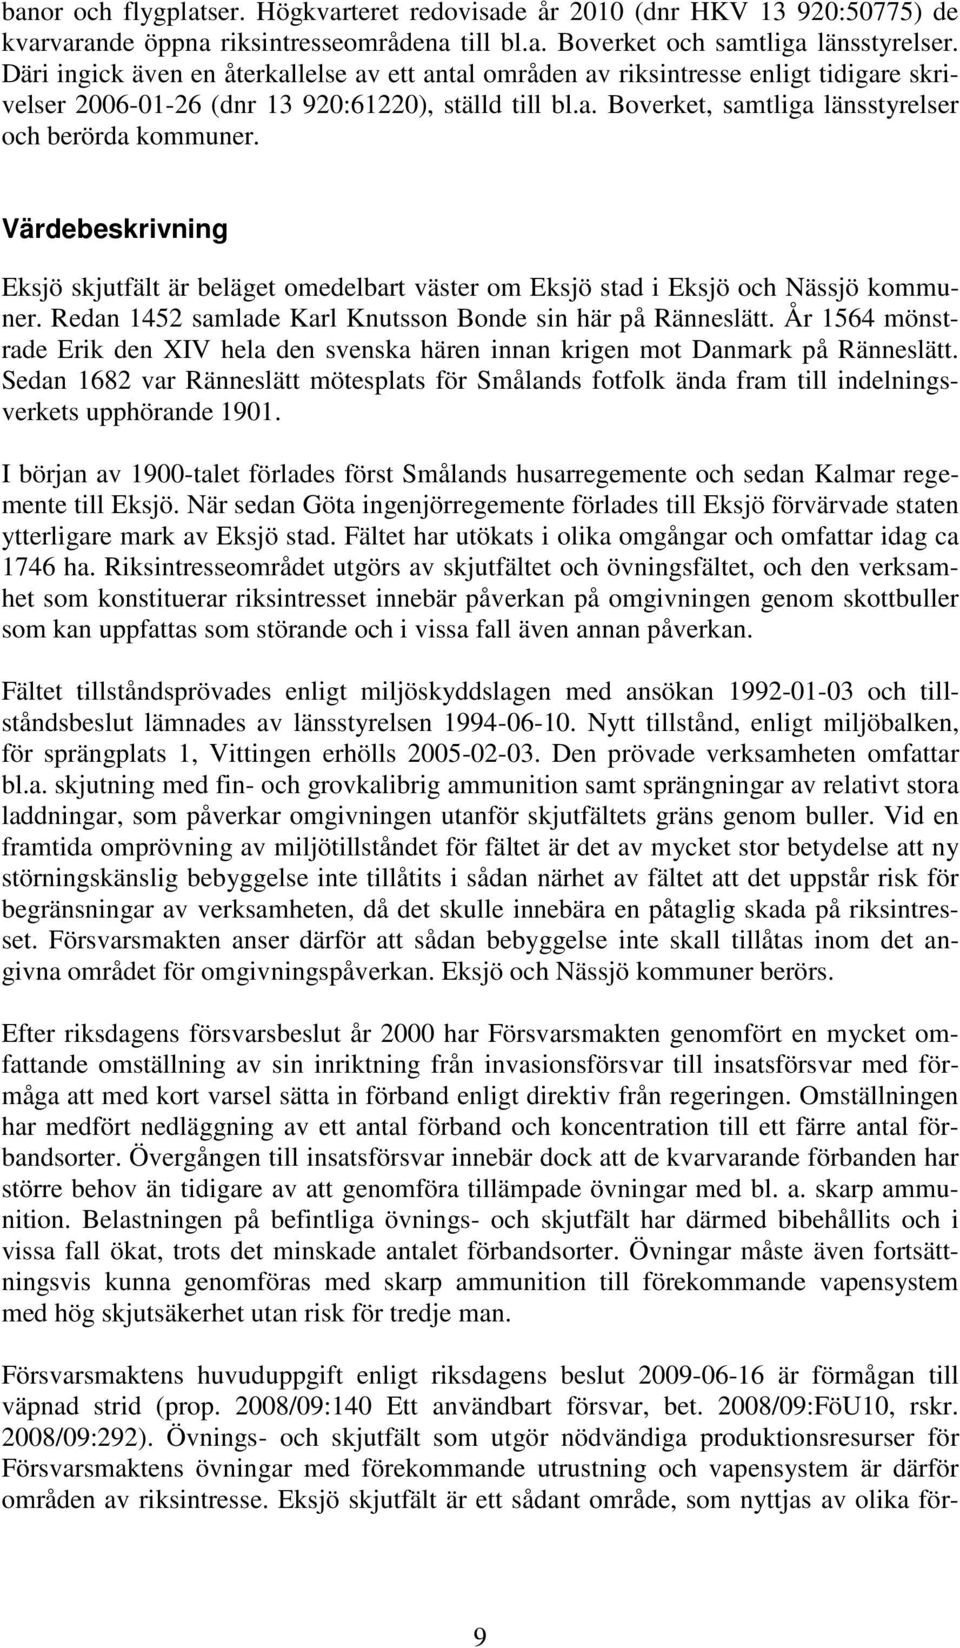 Värdebeskrivning Eksjö skjutfält är beläget omedelbart väster om Eksjö stad i Eksjö och Nässjö kommuner. Redan 1452 samlade Karl Knutsson Bonde sin här på Ränneslätt.